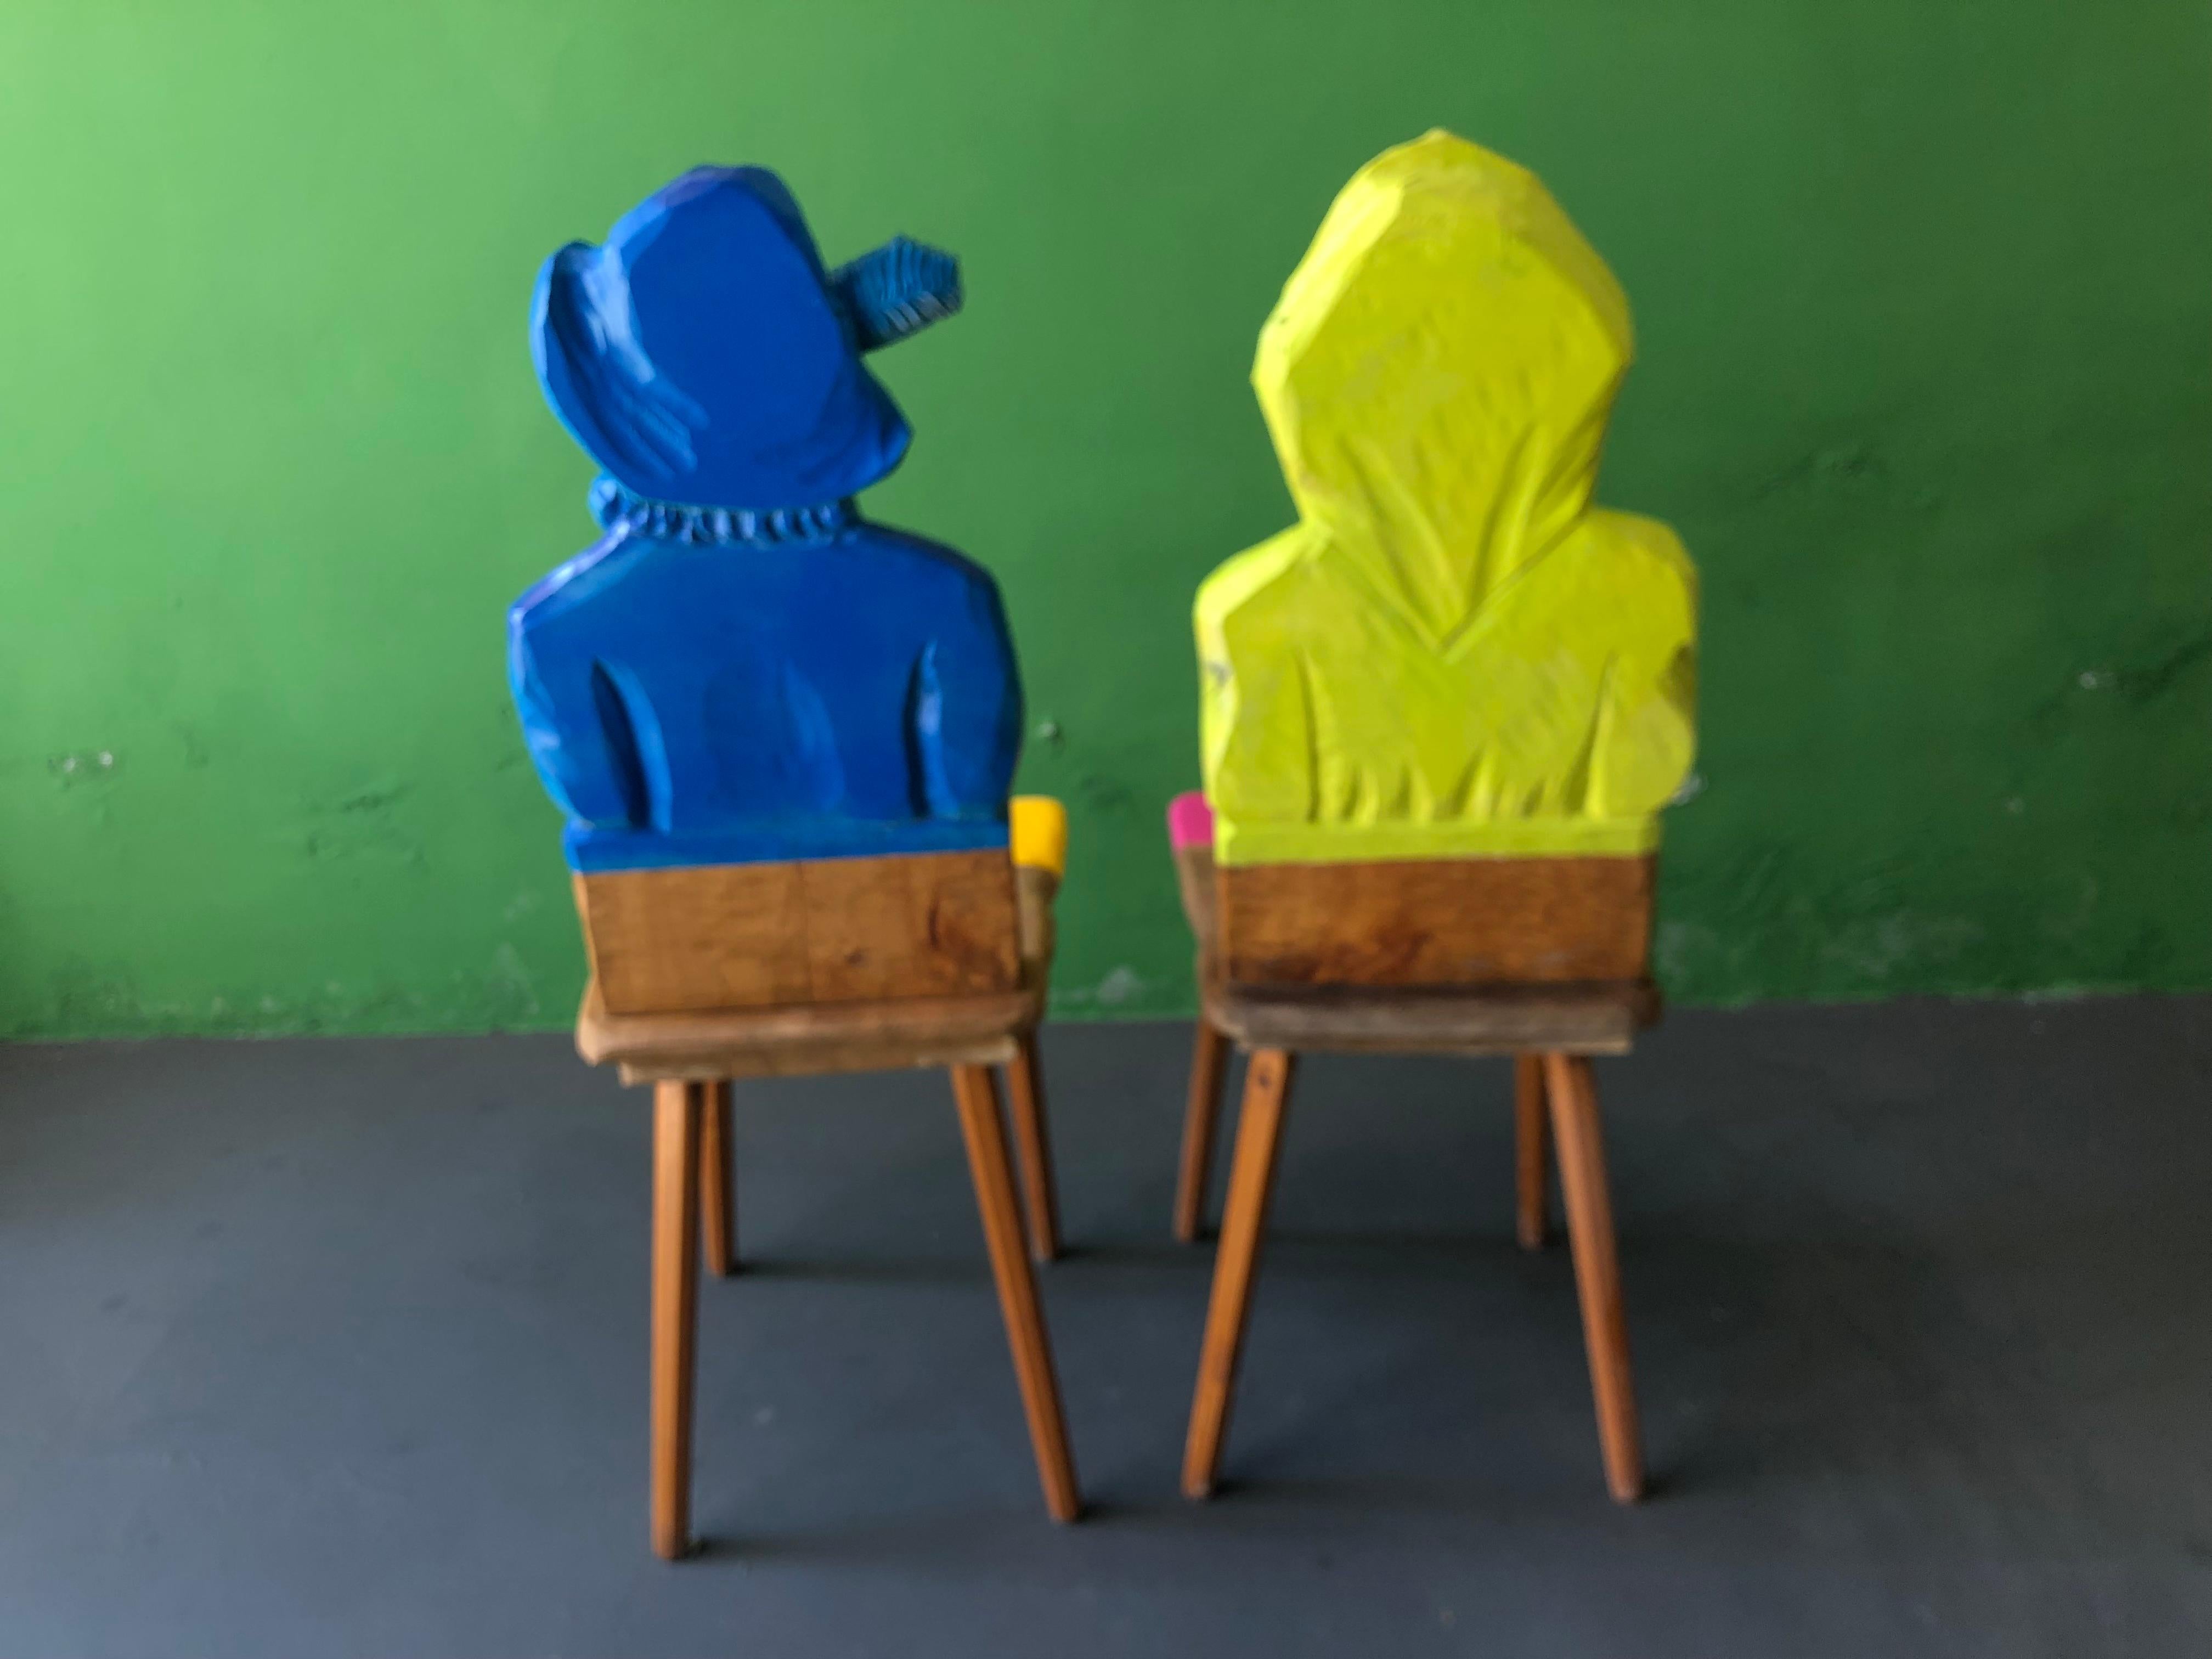 Ces chaises sont des chaises de ferme des années 1940 provenant de la Forêt Noire en Allemagne. Elles sont sculptées à la main et symbolisent une bonne relation entre un homme et une femme. Ces chaises sont souvent offertes en cadeau de mariage. Ils